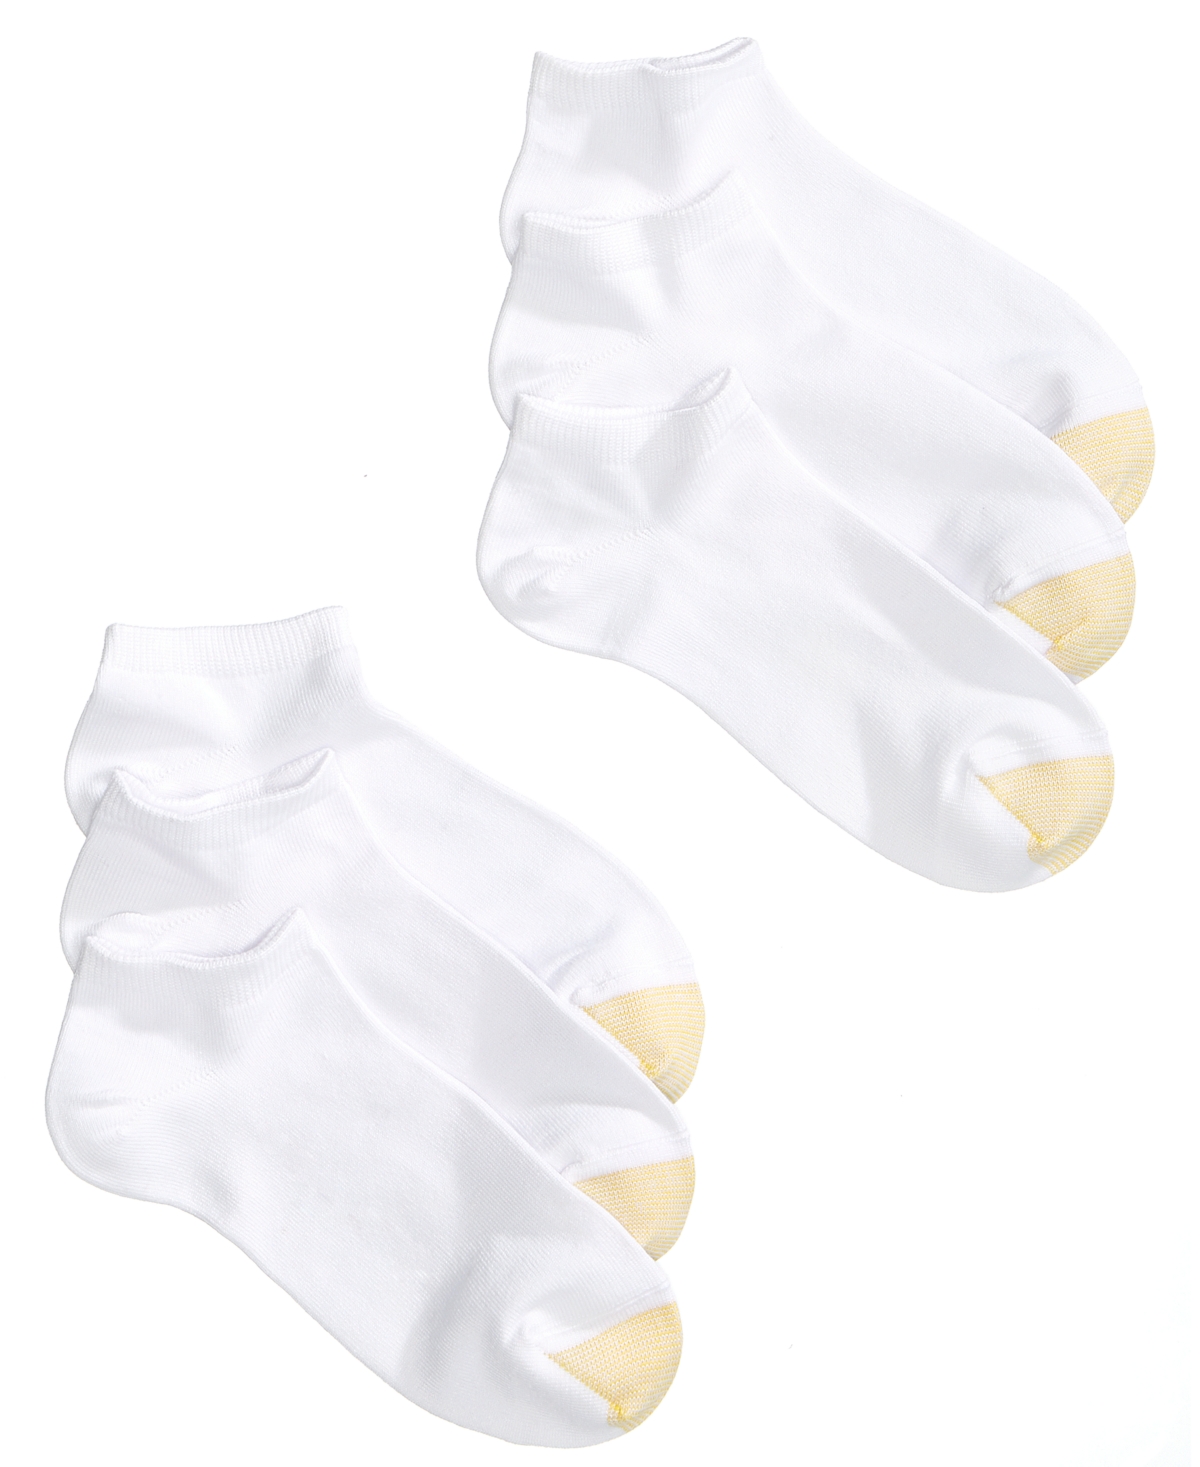 Women's 6-Pack Casual Ultra-Soft Socks - White